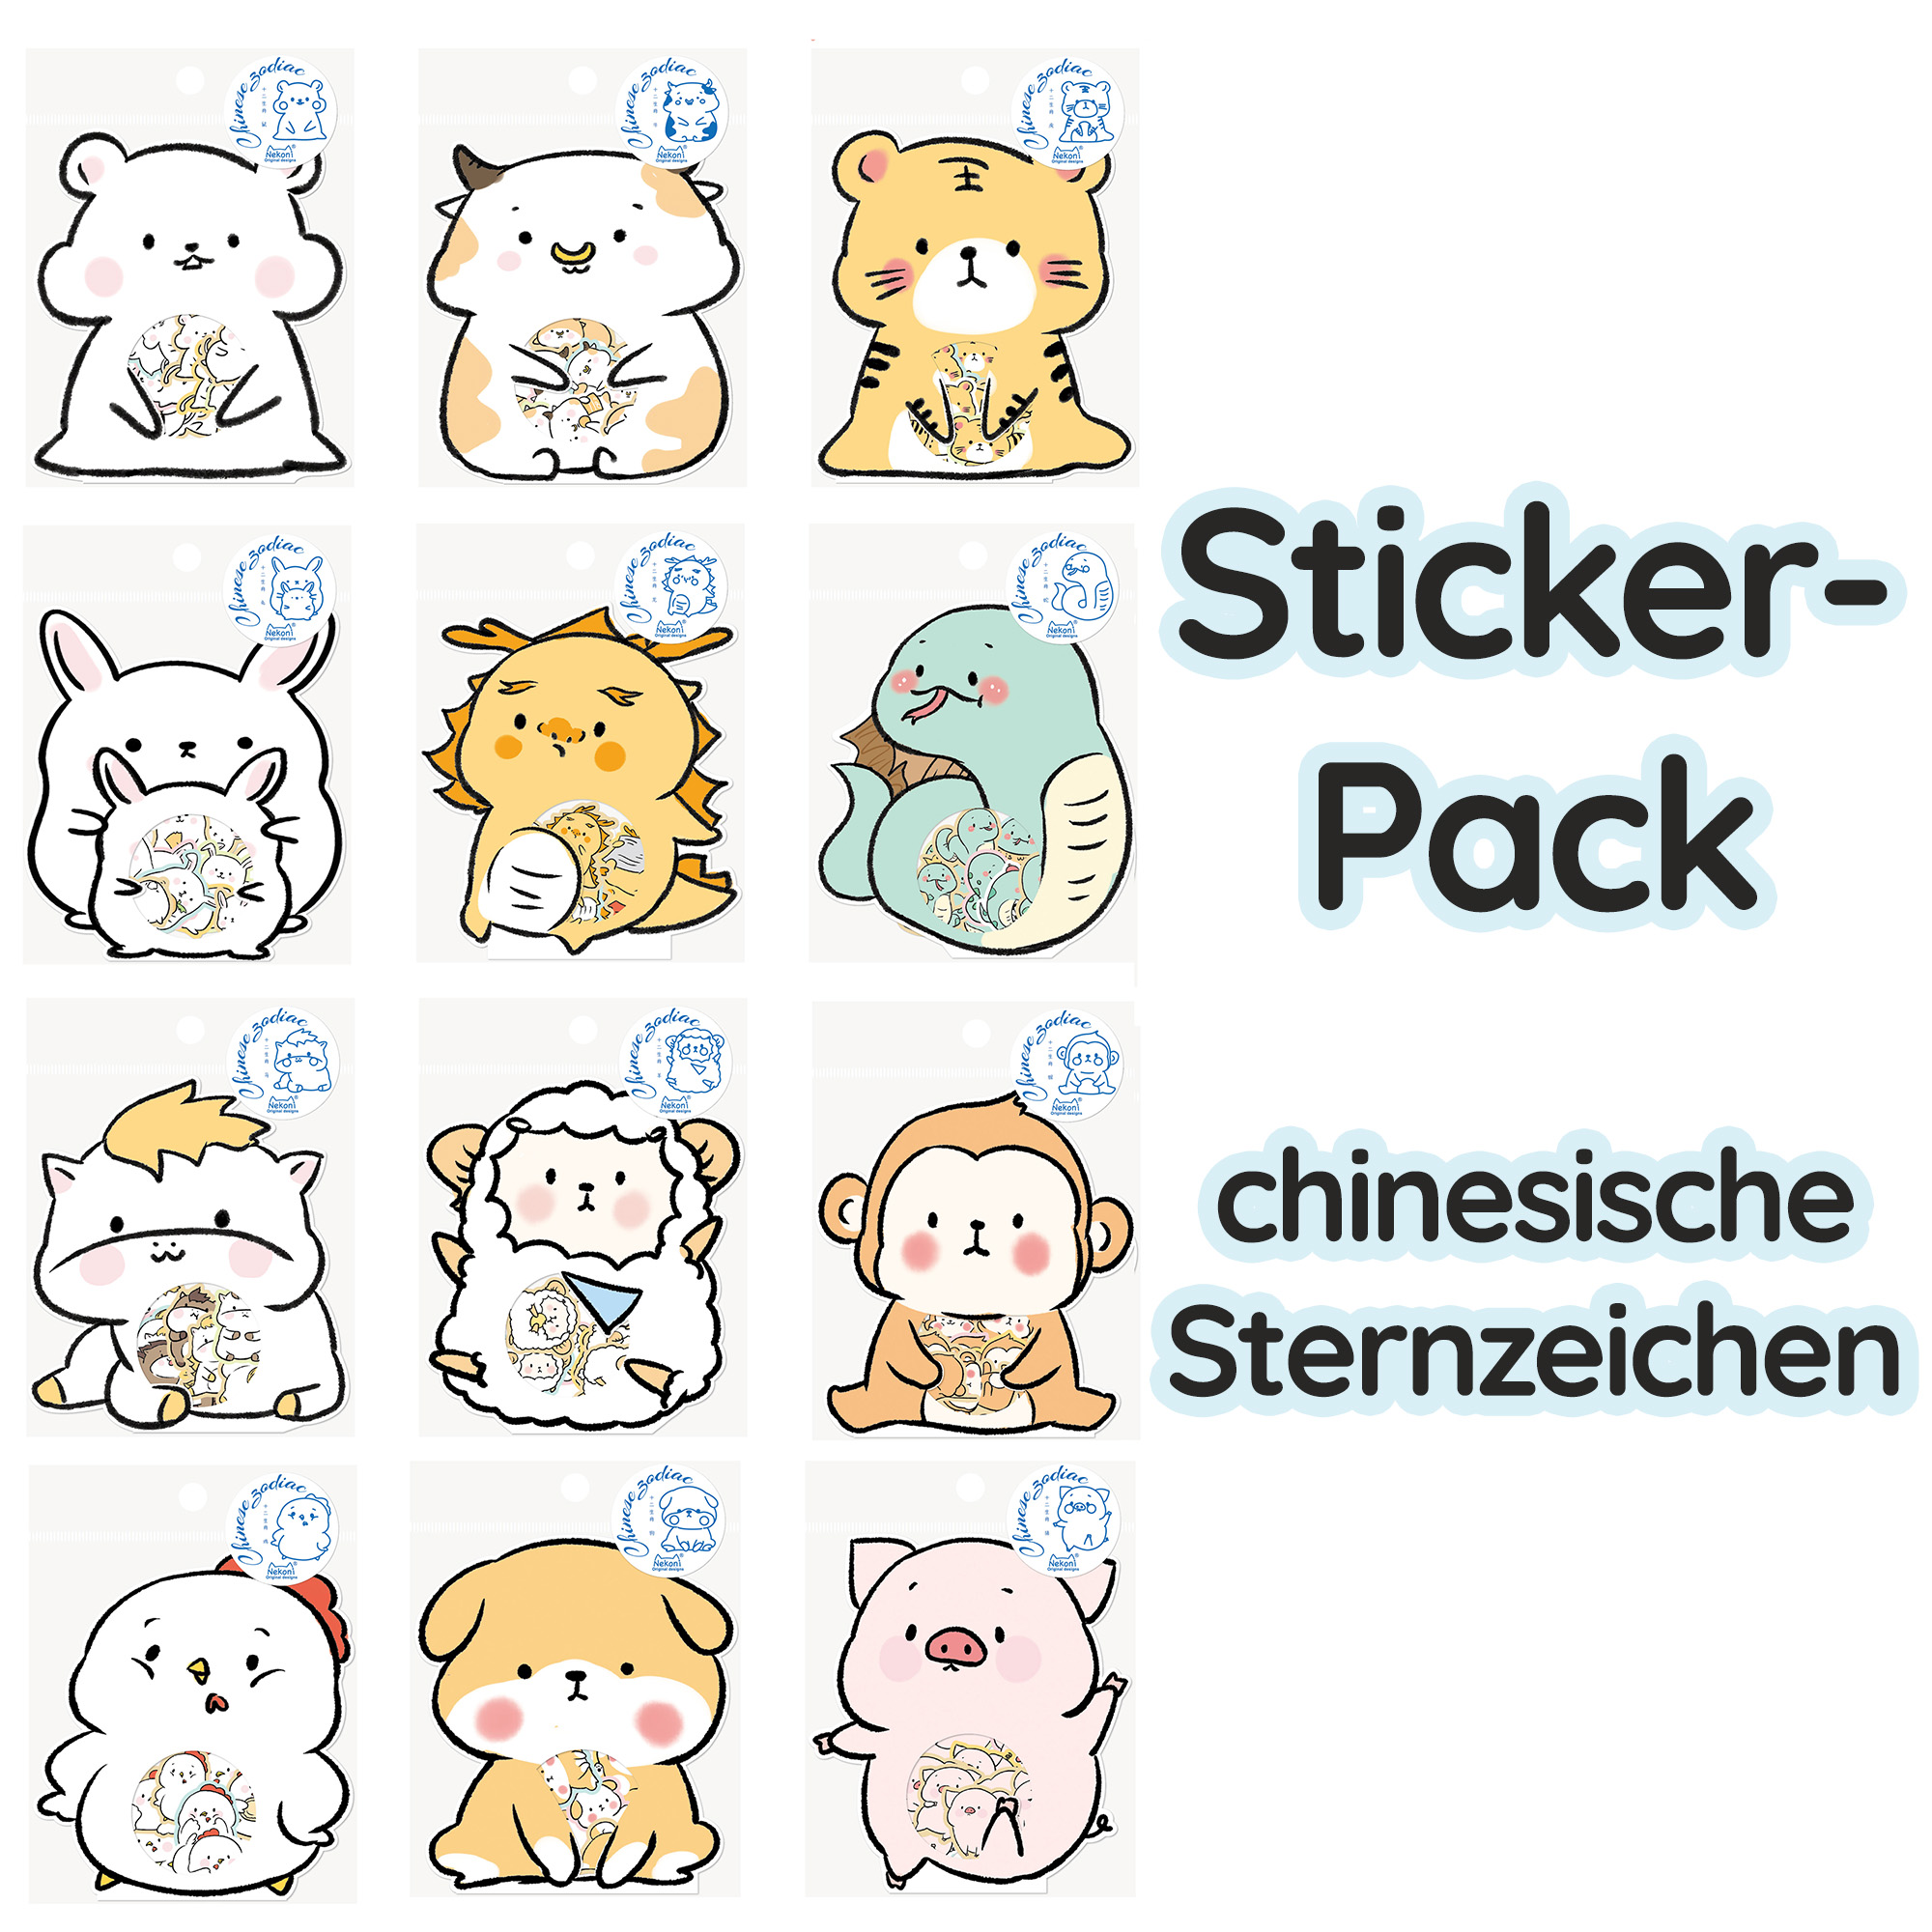 Sticker-Pack chinesische Sternzeichen